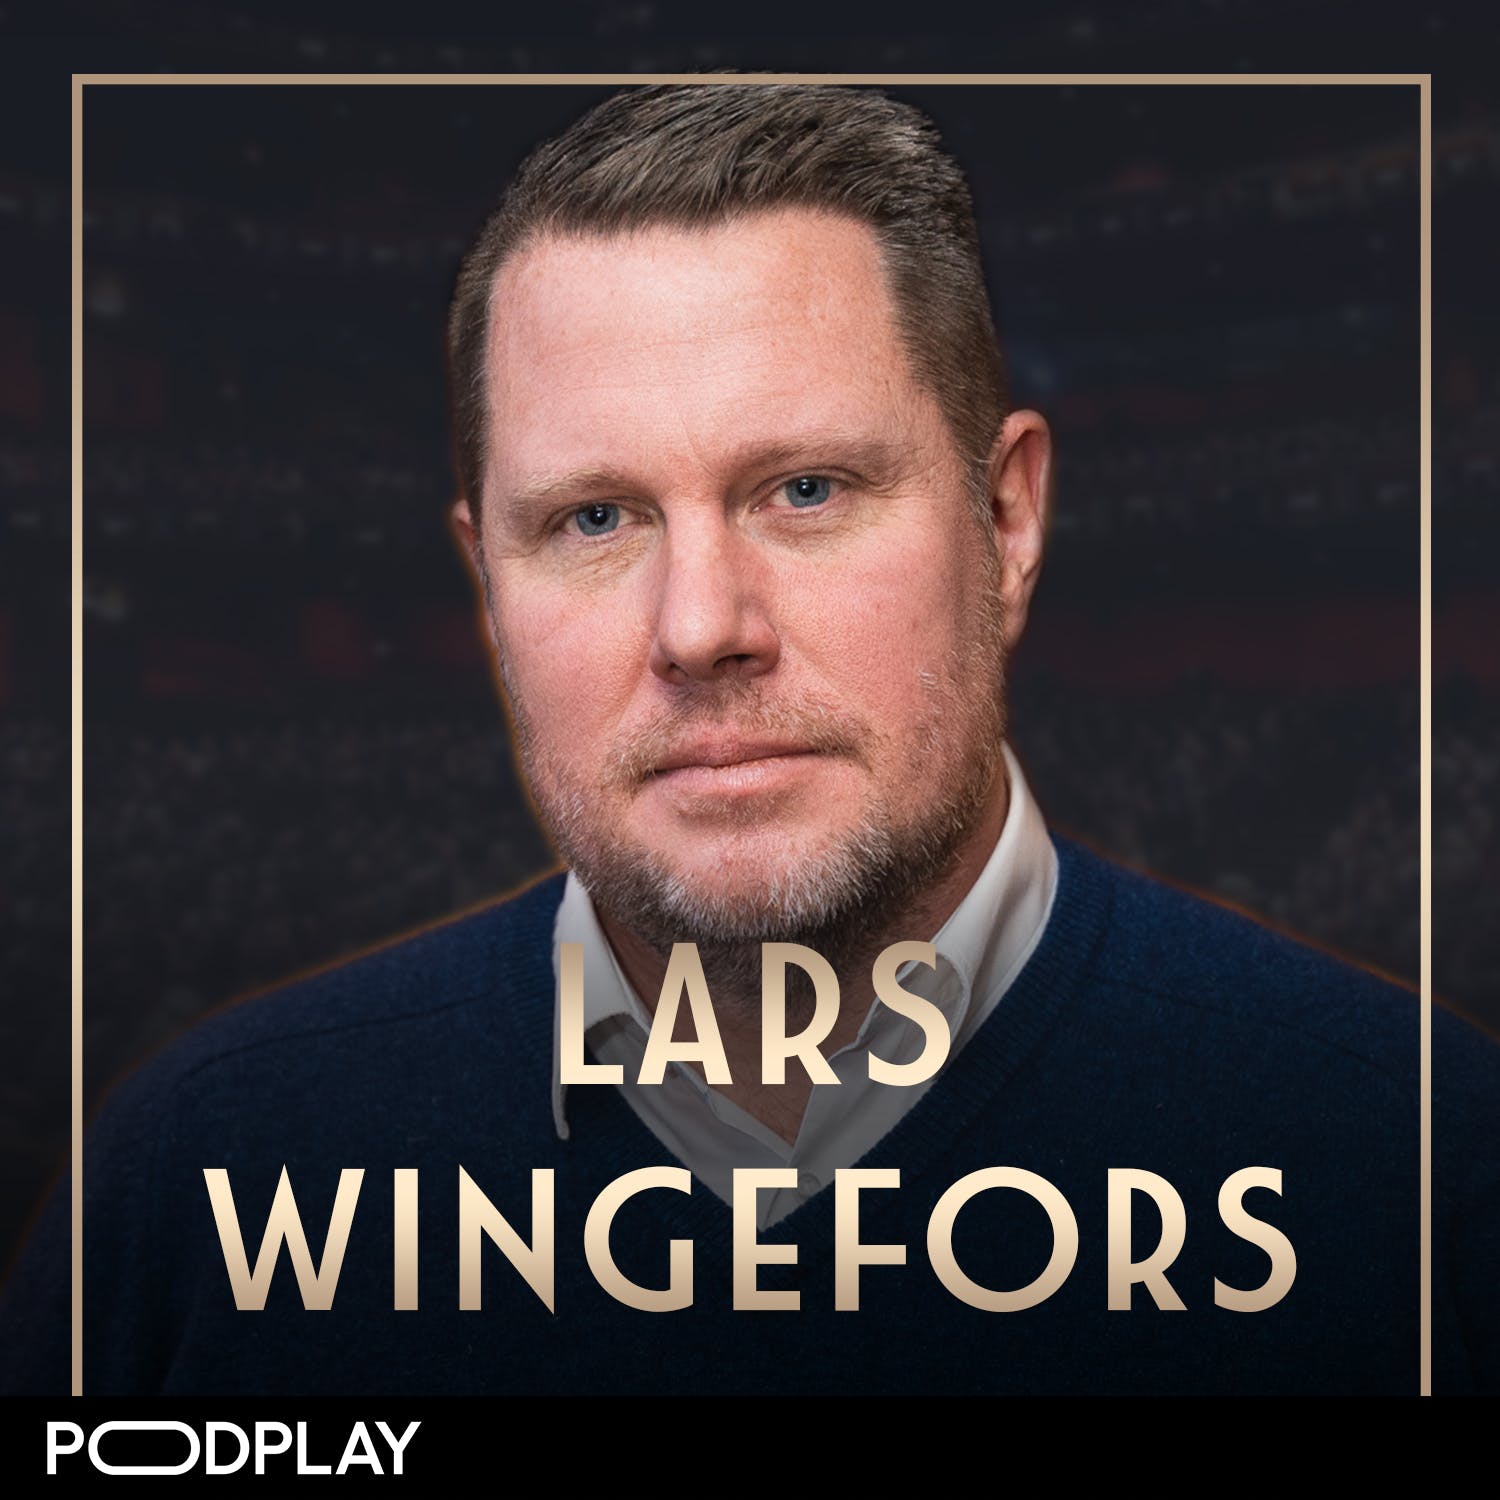 362. Lars Wingefors - Raggaren som blev miljardär, Original